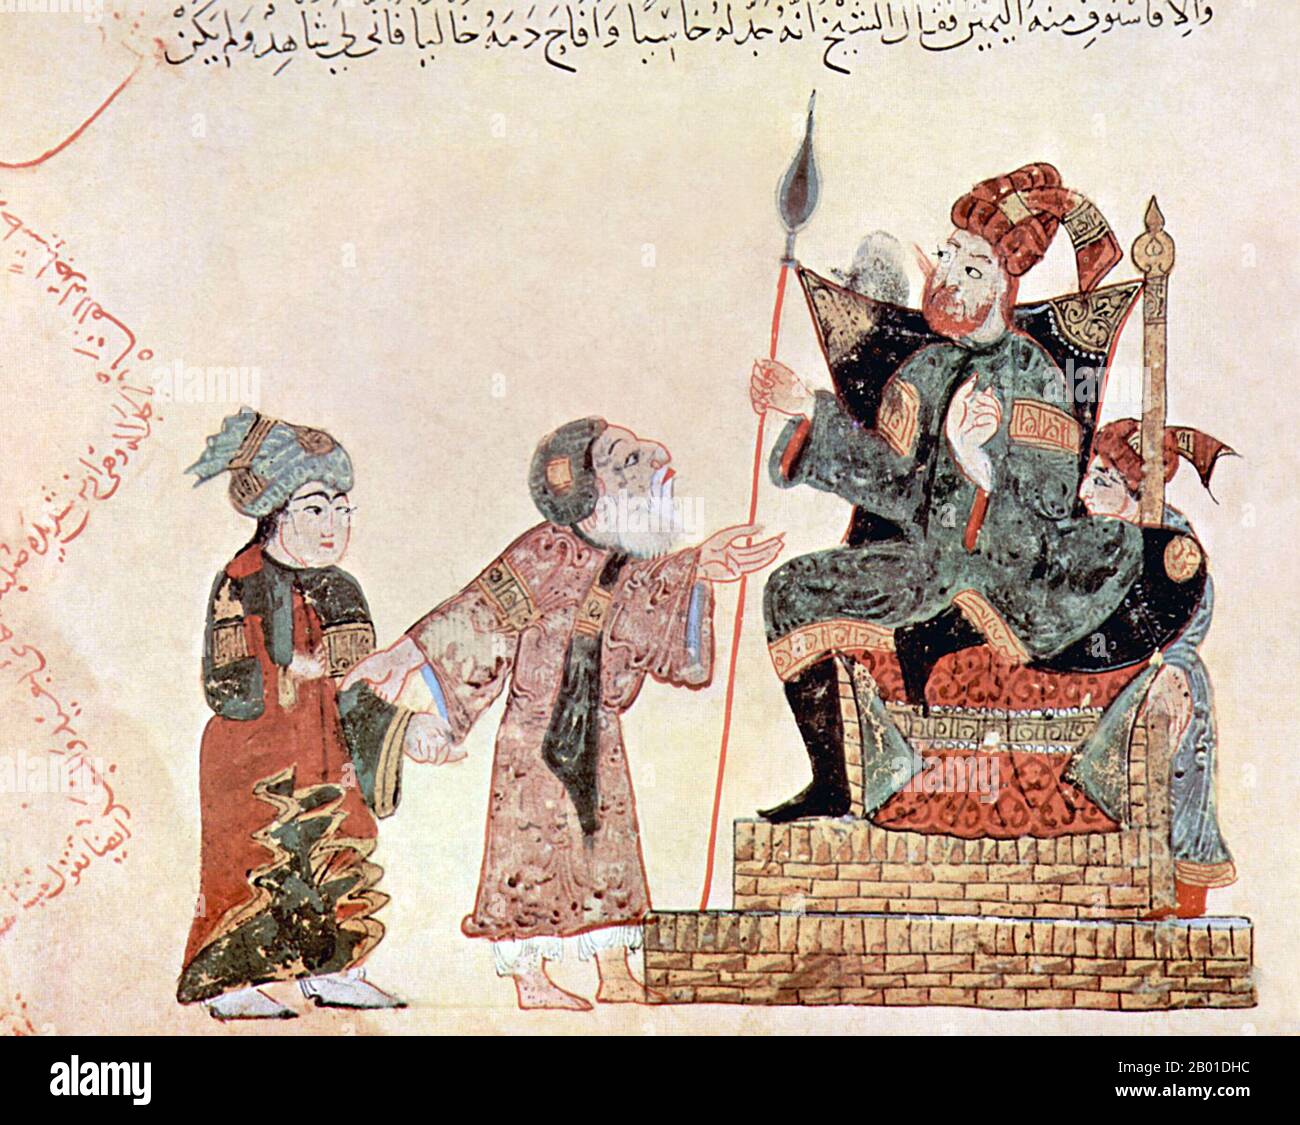 Irak/Arabien: Abu Zayd unterhält sich mit dem Gouverneur von Rahba im Jemen. Miniatur von Yahya ibn Mahmud al-Wasiti (FL. 13.. Jahrhundert), 1237 CE. Yahyâ ibn Mahmûd al-Wâsitî war ein arabischer islamischer Künstler aus dem 13.. Jahrhundert. Al-Wasiti wurde in Wasit im Südirak geboren. Er war bekannt für seine Illustrationen des Maqam von al-Hariri. Maqāma (wörtlich „Assemblys“) sind ein (ursprünglich) arabisches literarisches Genre der reimten Prosa mit Intervallen der Poesie, in denen rhetorische Extravaganz auffällt. Der Autor Badī al-Zaman al-Hamadhāni aus dem 10.. Jahrhundert soll die Form erfunden haben. Stockfoto